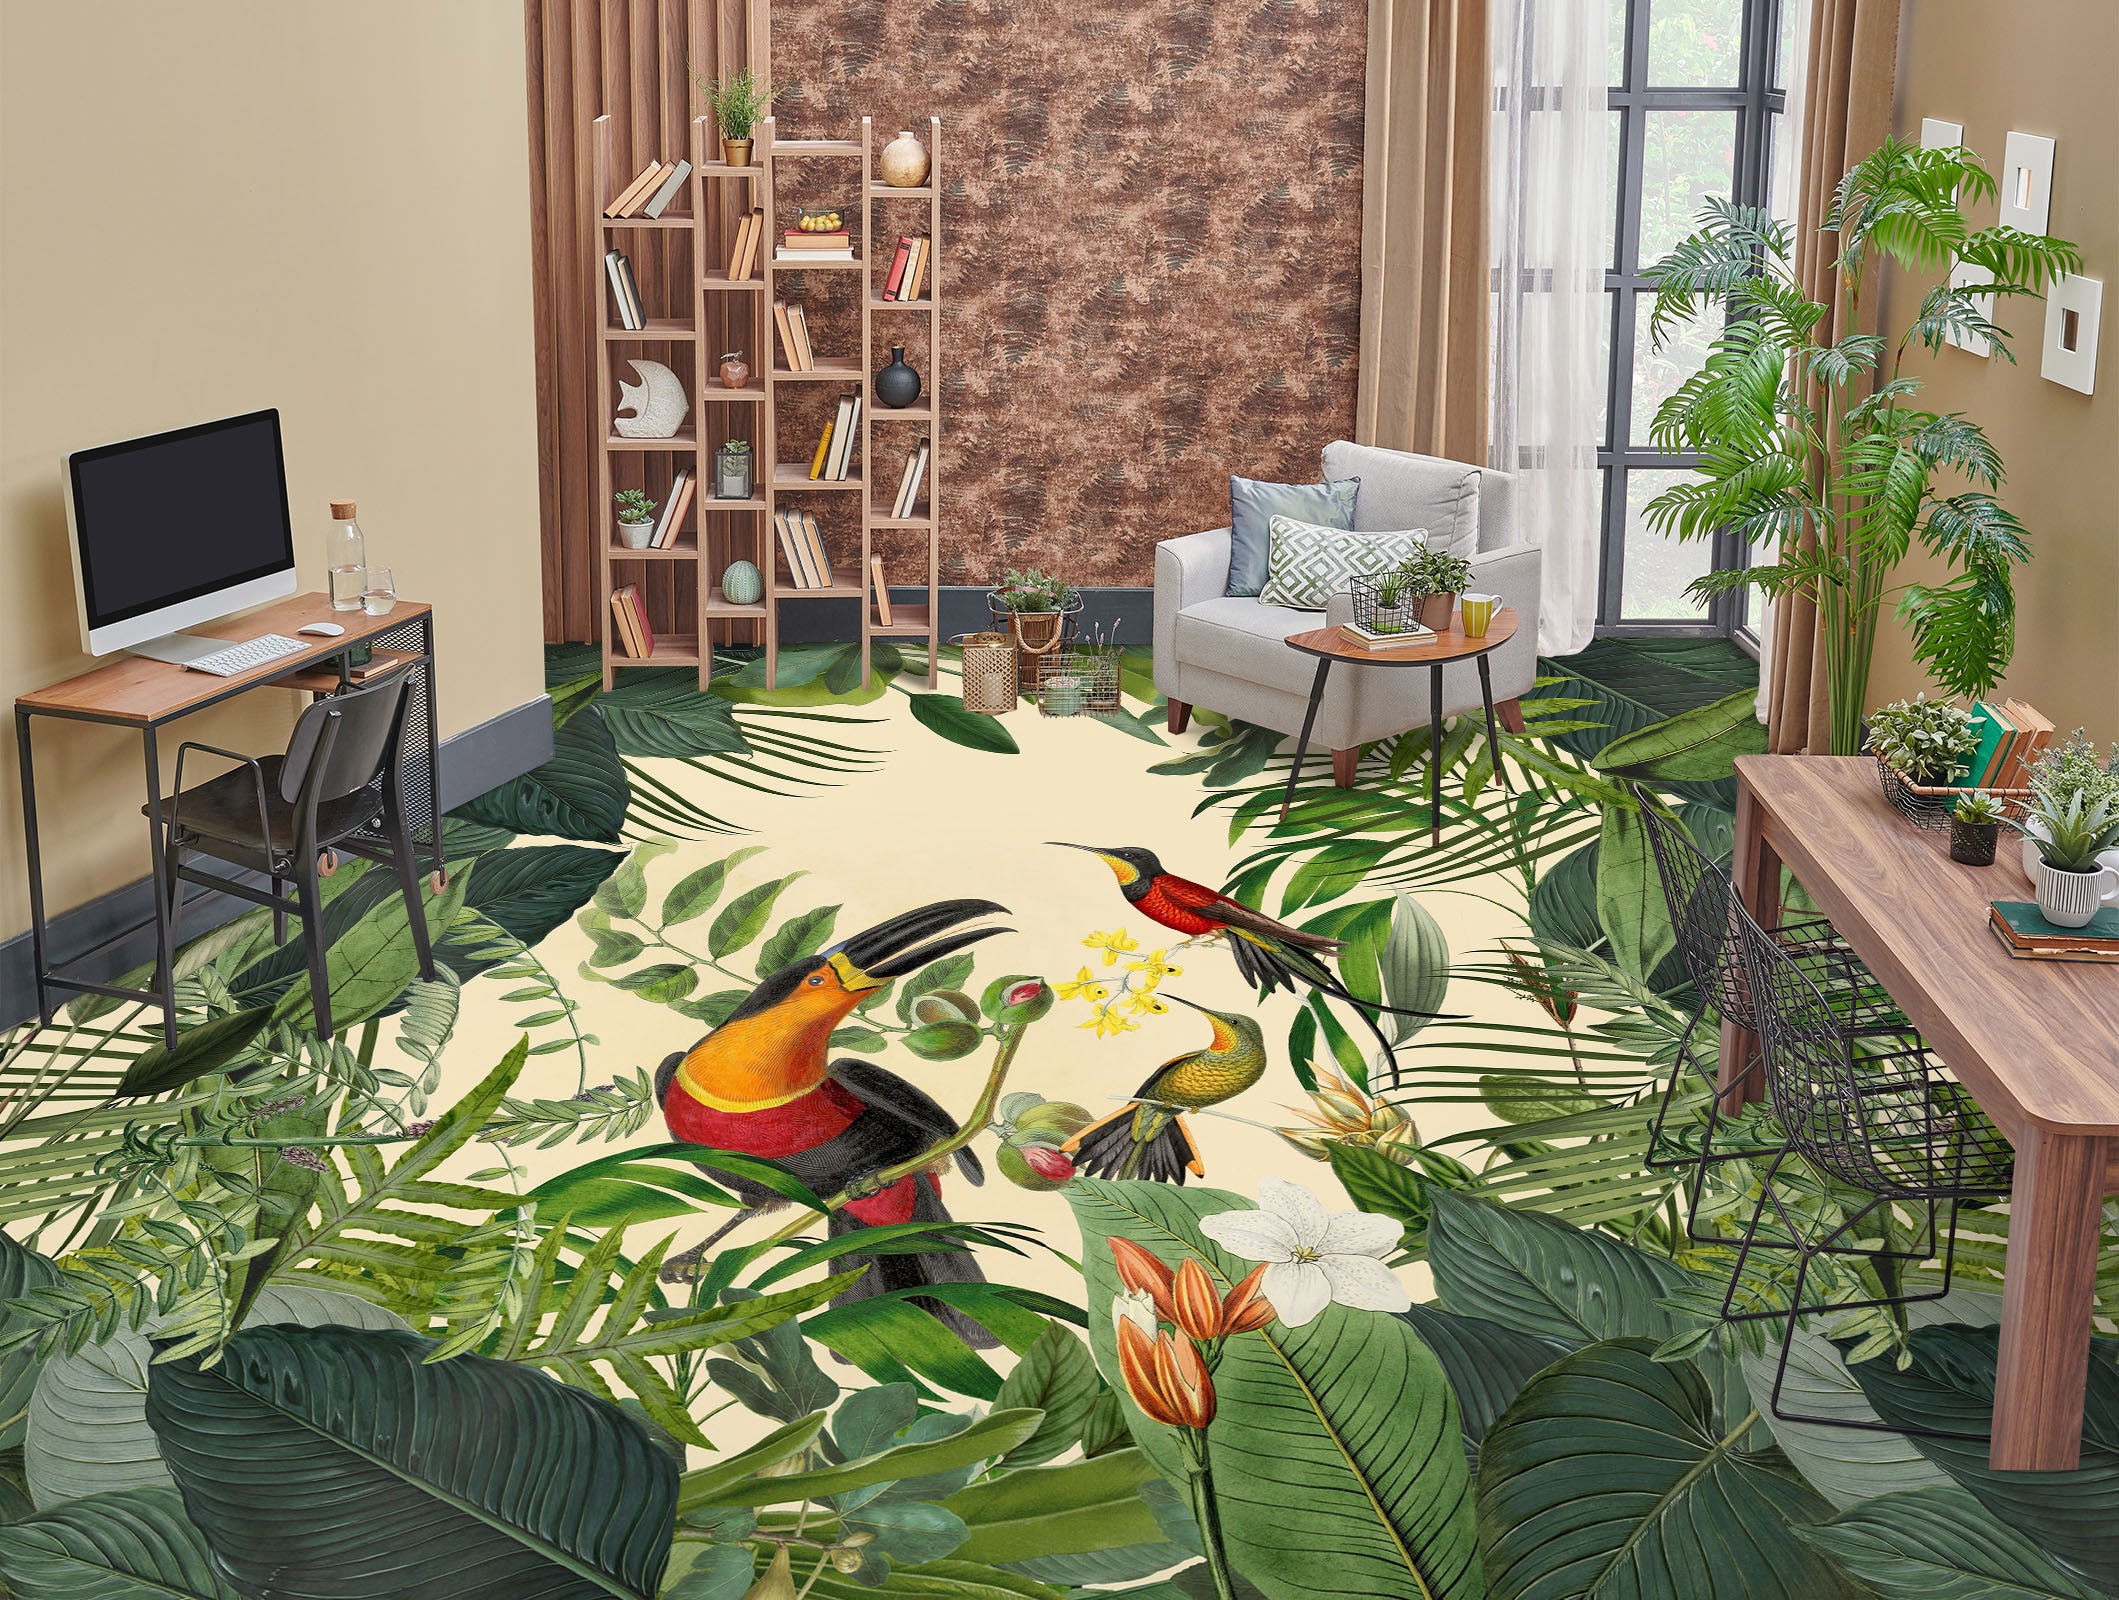 3D Jungle Bird 104136 Andrea Haase Floor Mural